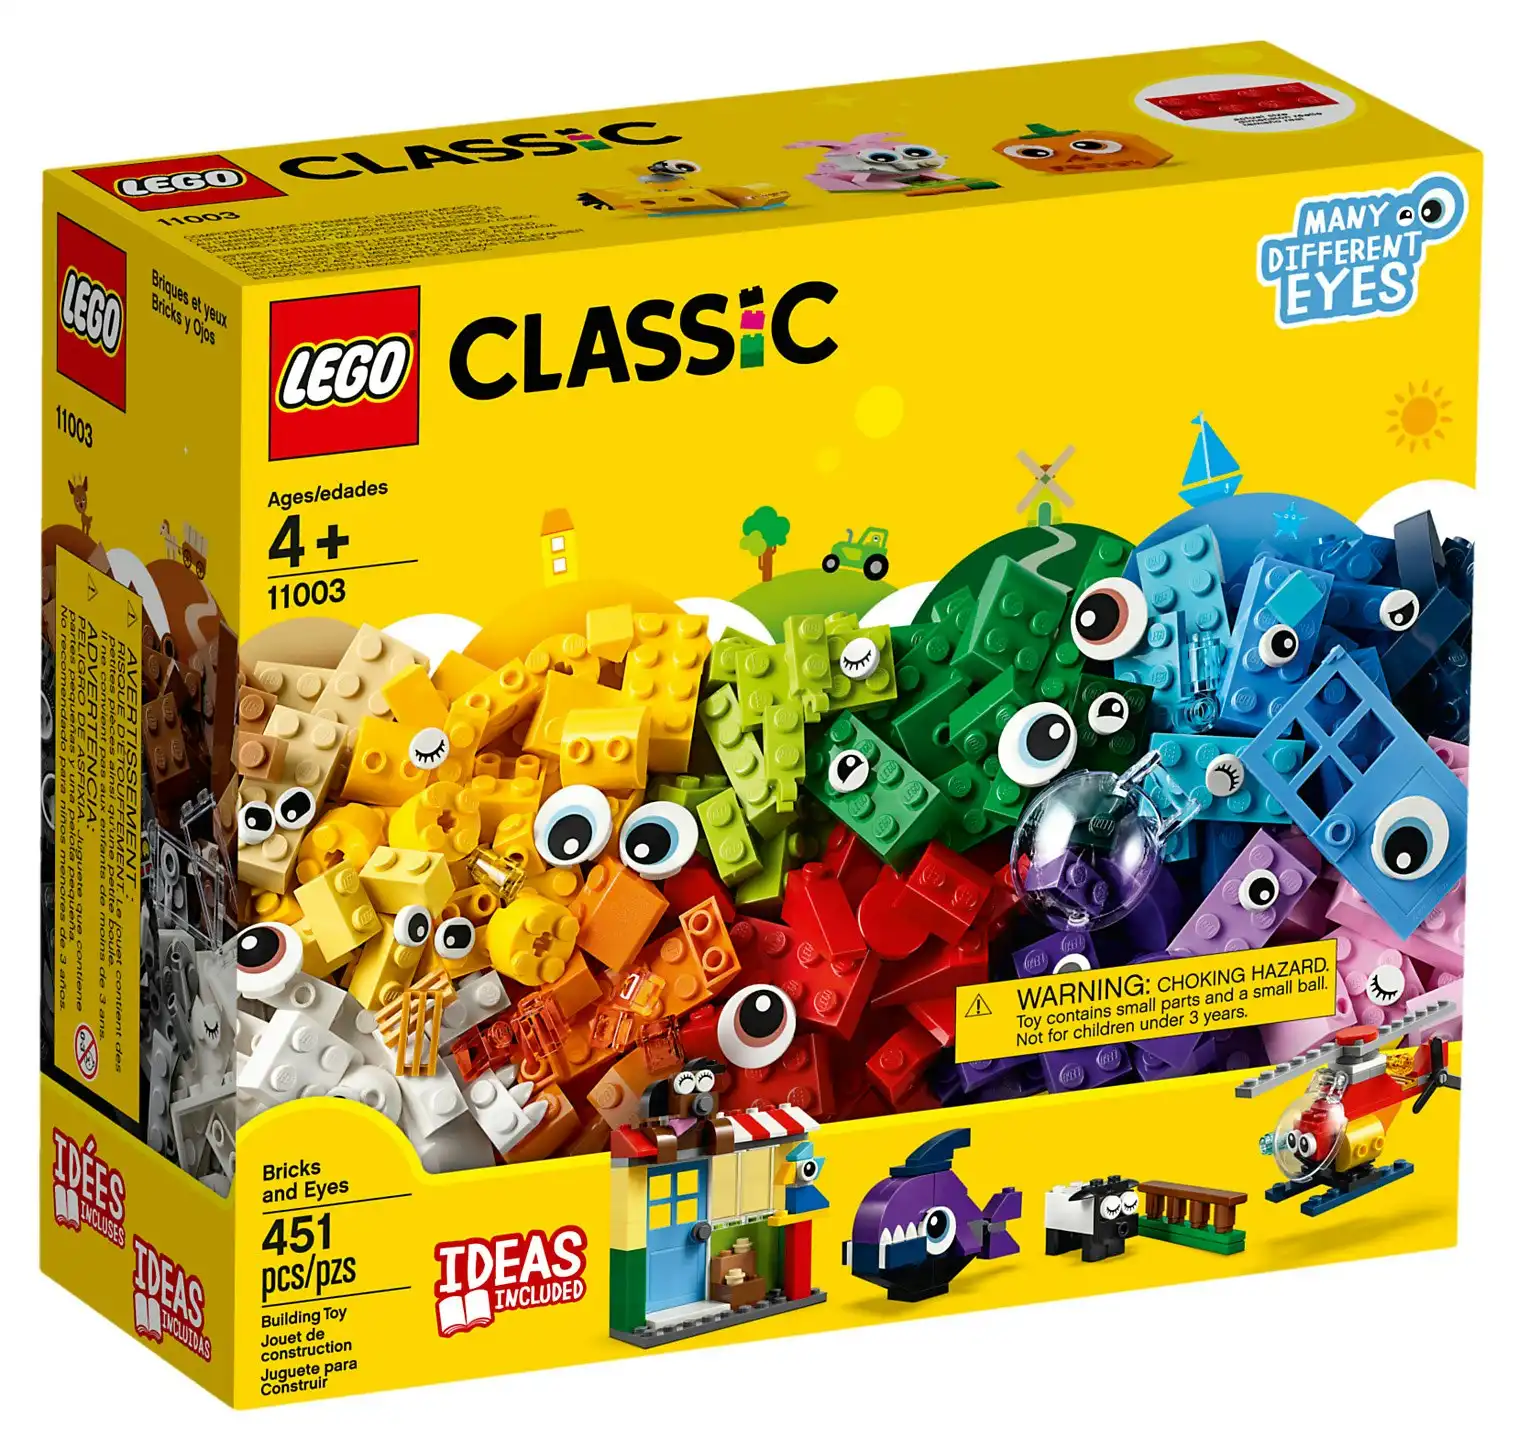 LEGO 11003 Bricks and Eyes - Classic 4+